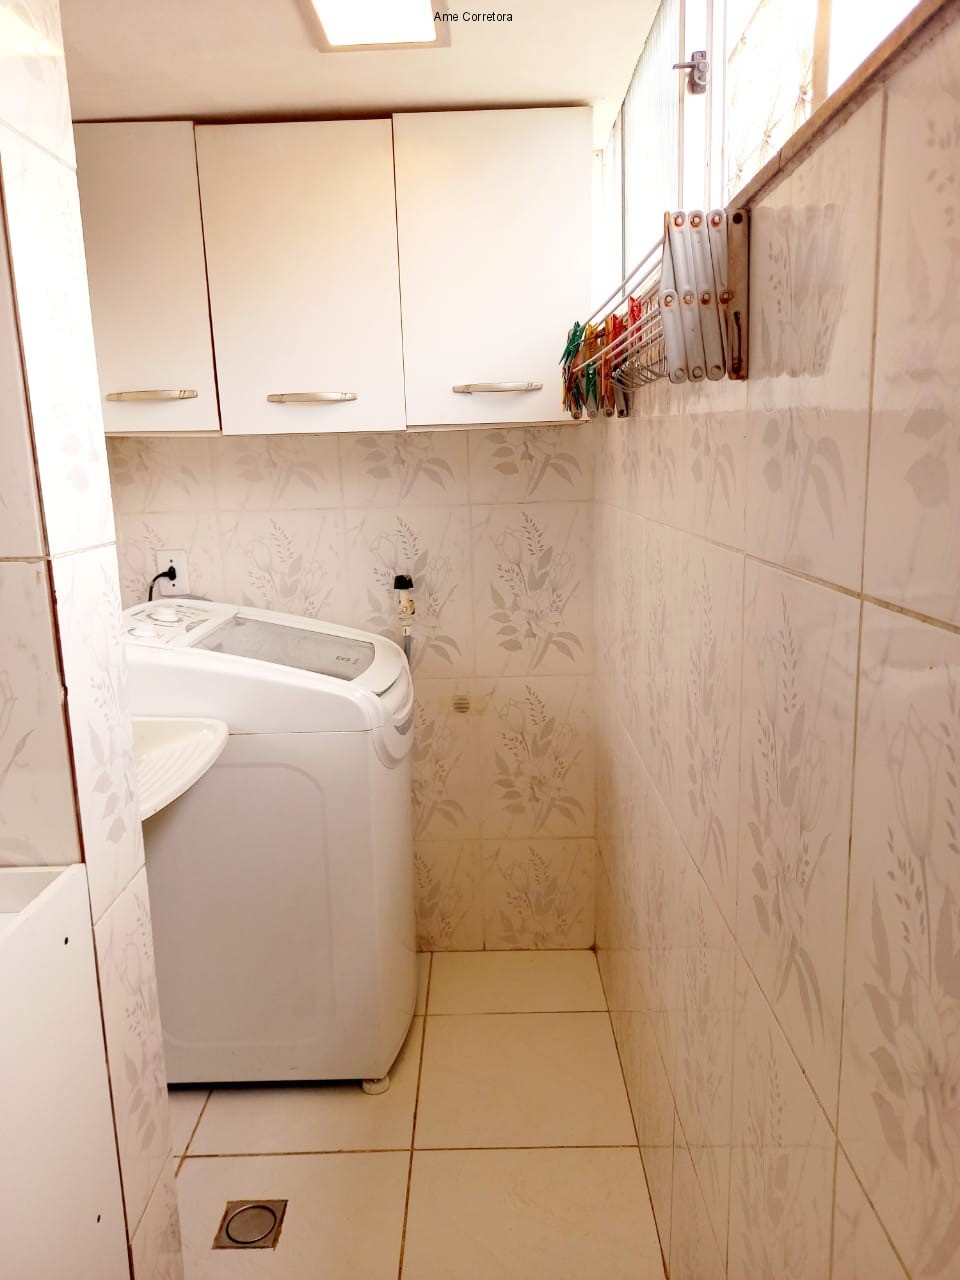 FOTO 19 - Apartamento 3 quartos à venda Rio de Janeiro,RJ - R$ 165.000 - AP00442 - 20